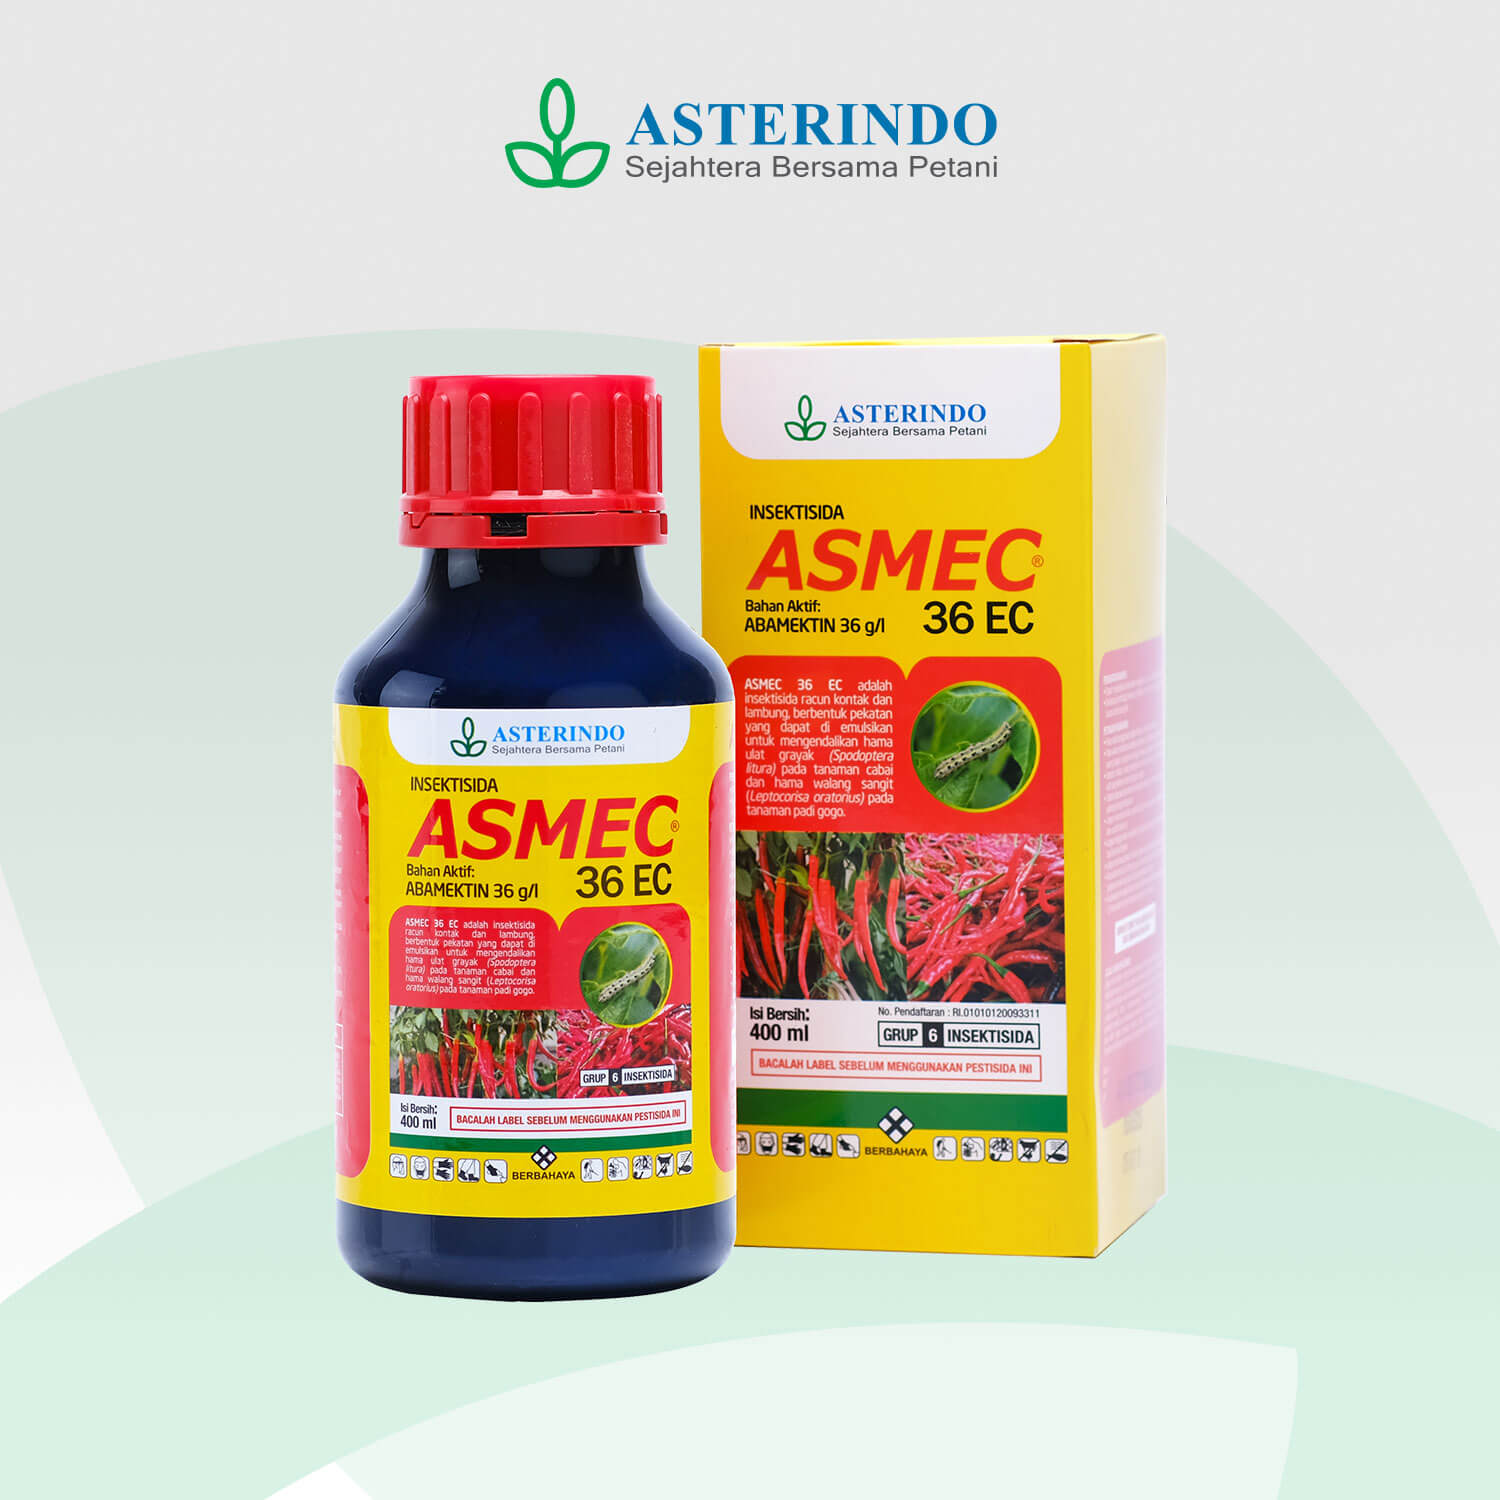 ASMEC-insektisida-Asterindo